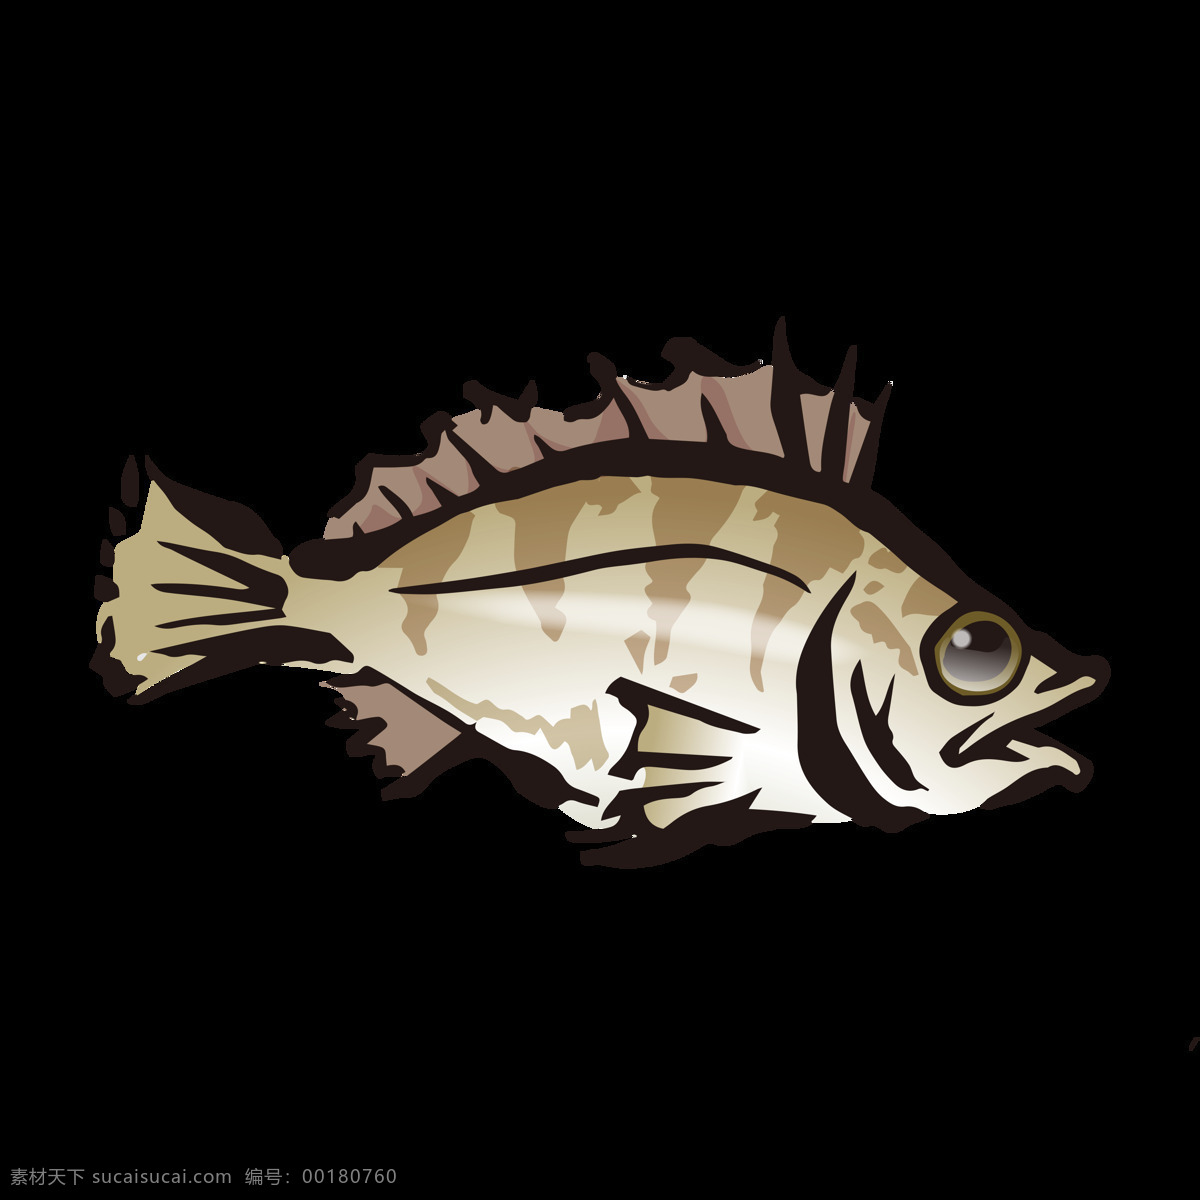 石斑鱼 水彩 绘画 海鱼 鱼类 海产 图案 石斑鱼鱼 海鲜 海洋生物 水产 食物 手绘 颜料 小清新 包装图案 卡通 生物世界